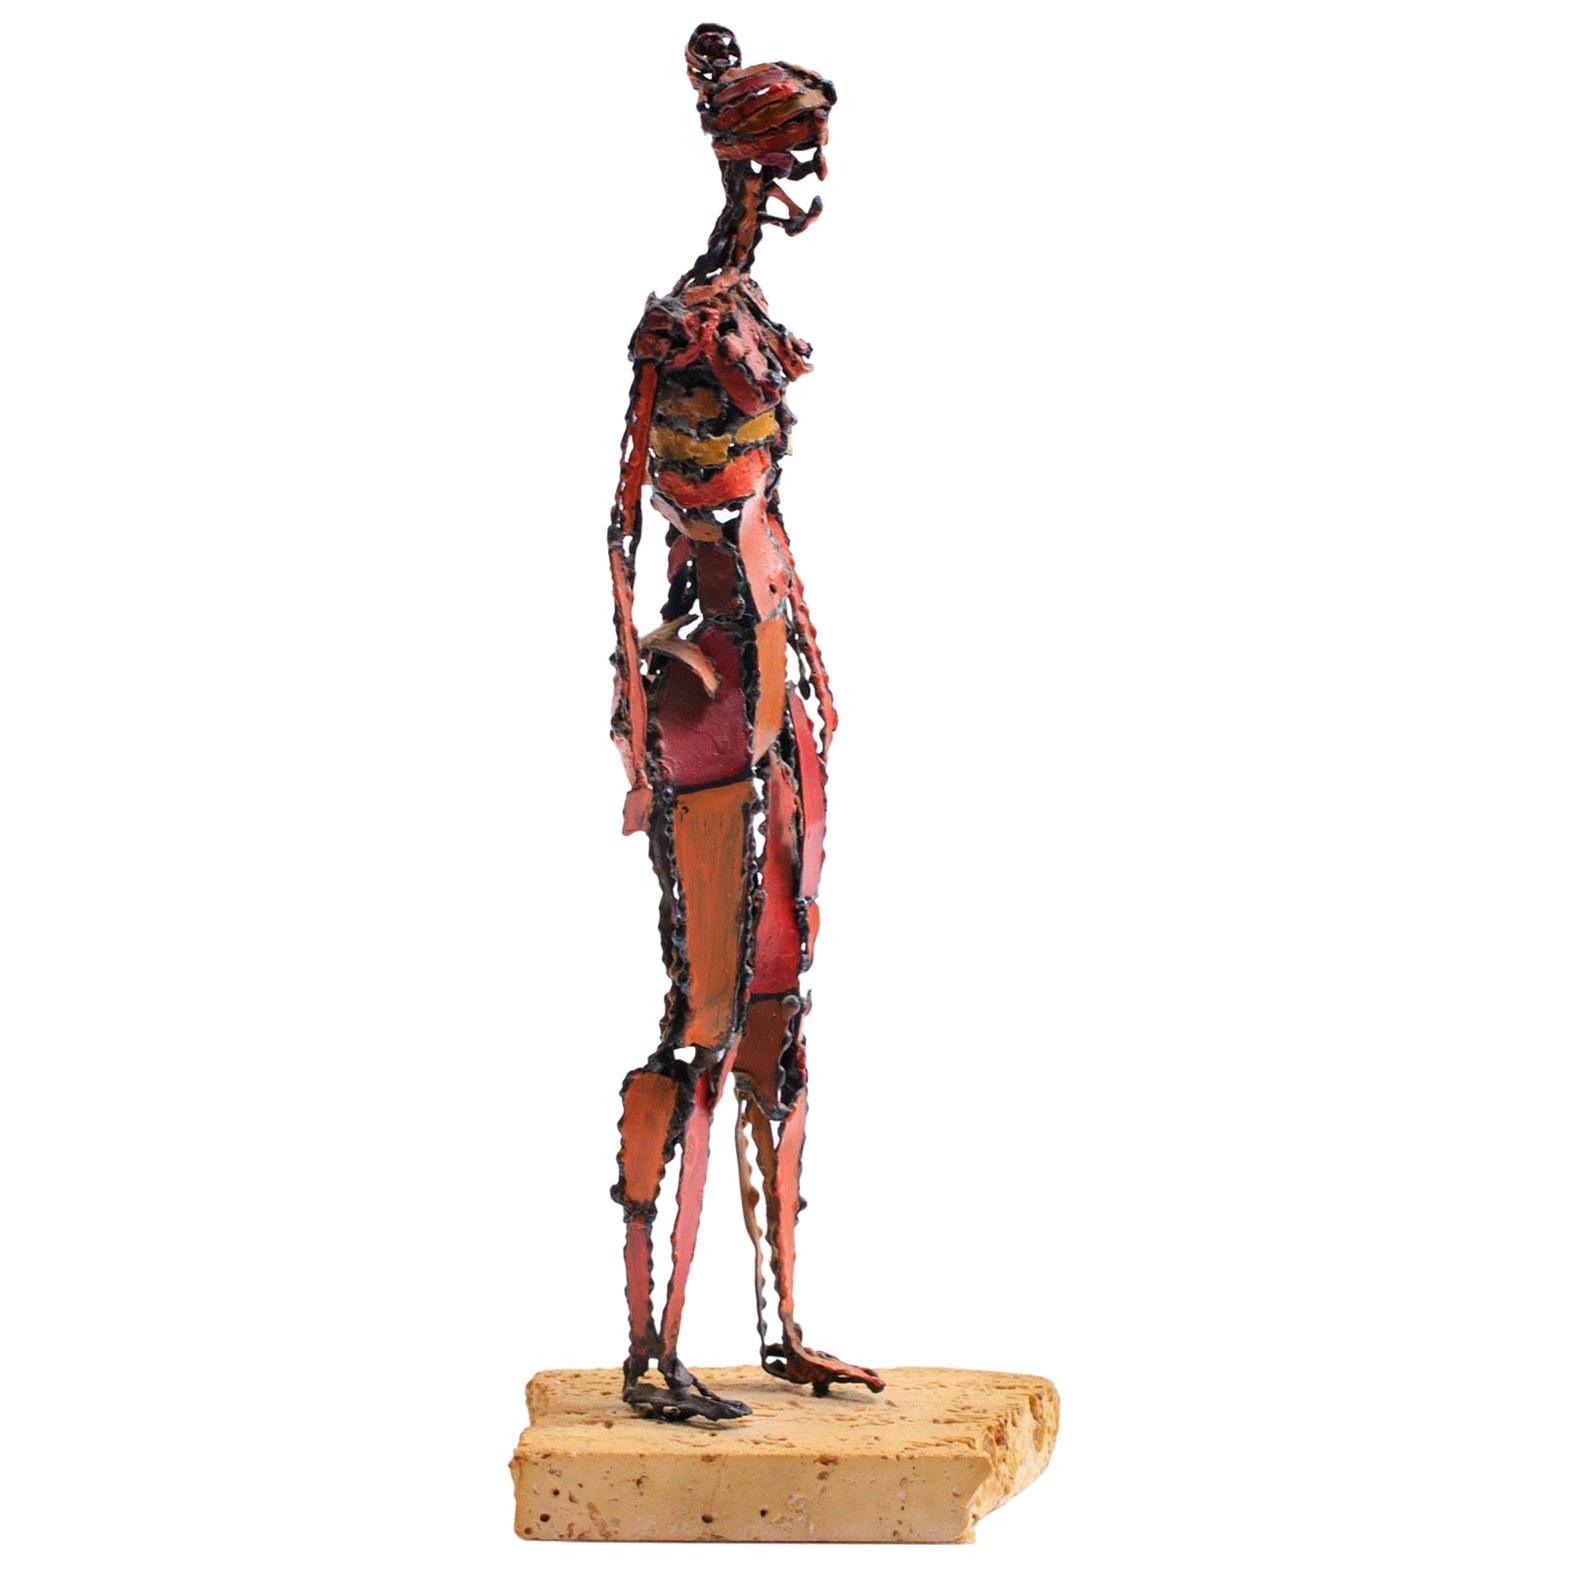 1960er Jahre Brutalistischer weiblicher Akt Skulptur aus lackiertem Eisen auf Travertinsockel